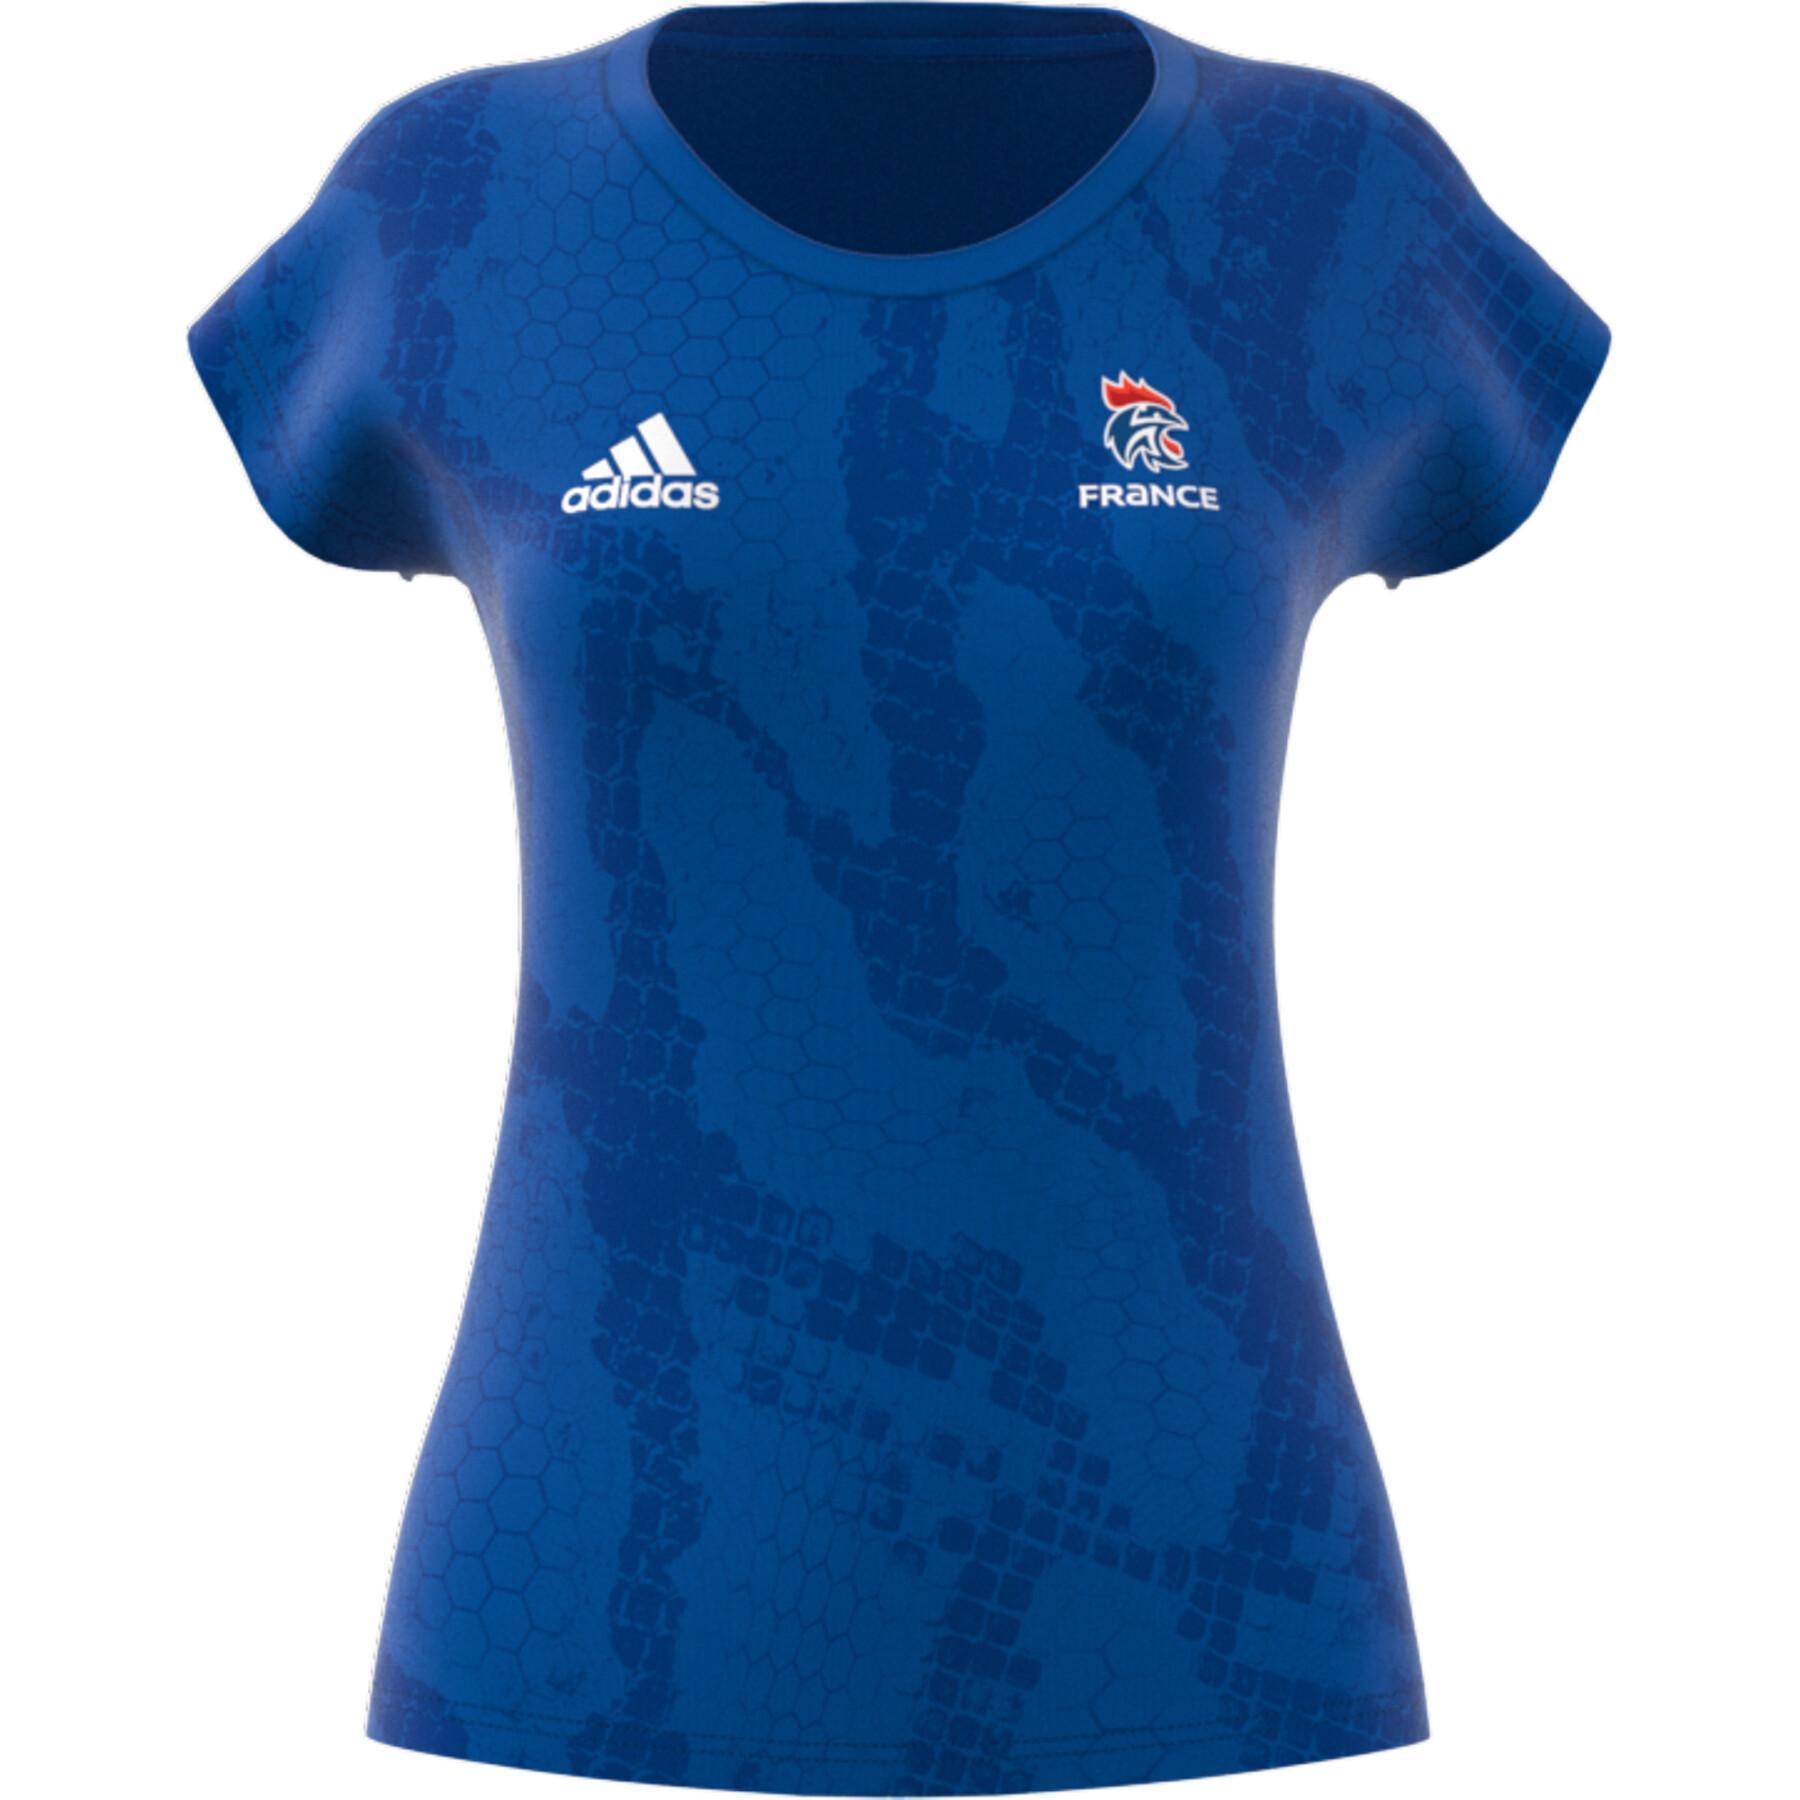 Camisola treino mulher Adidas Equipe de France Handball 